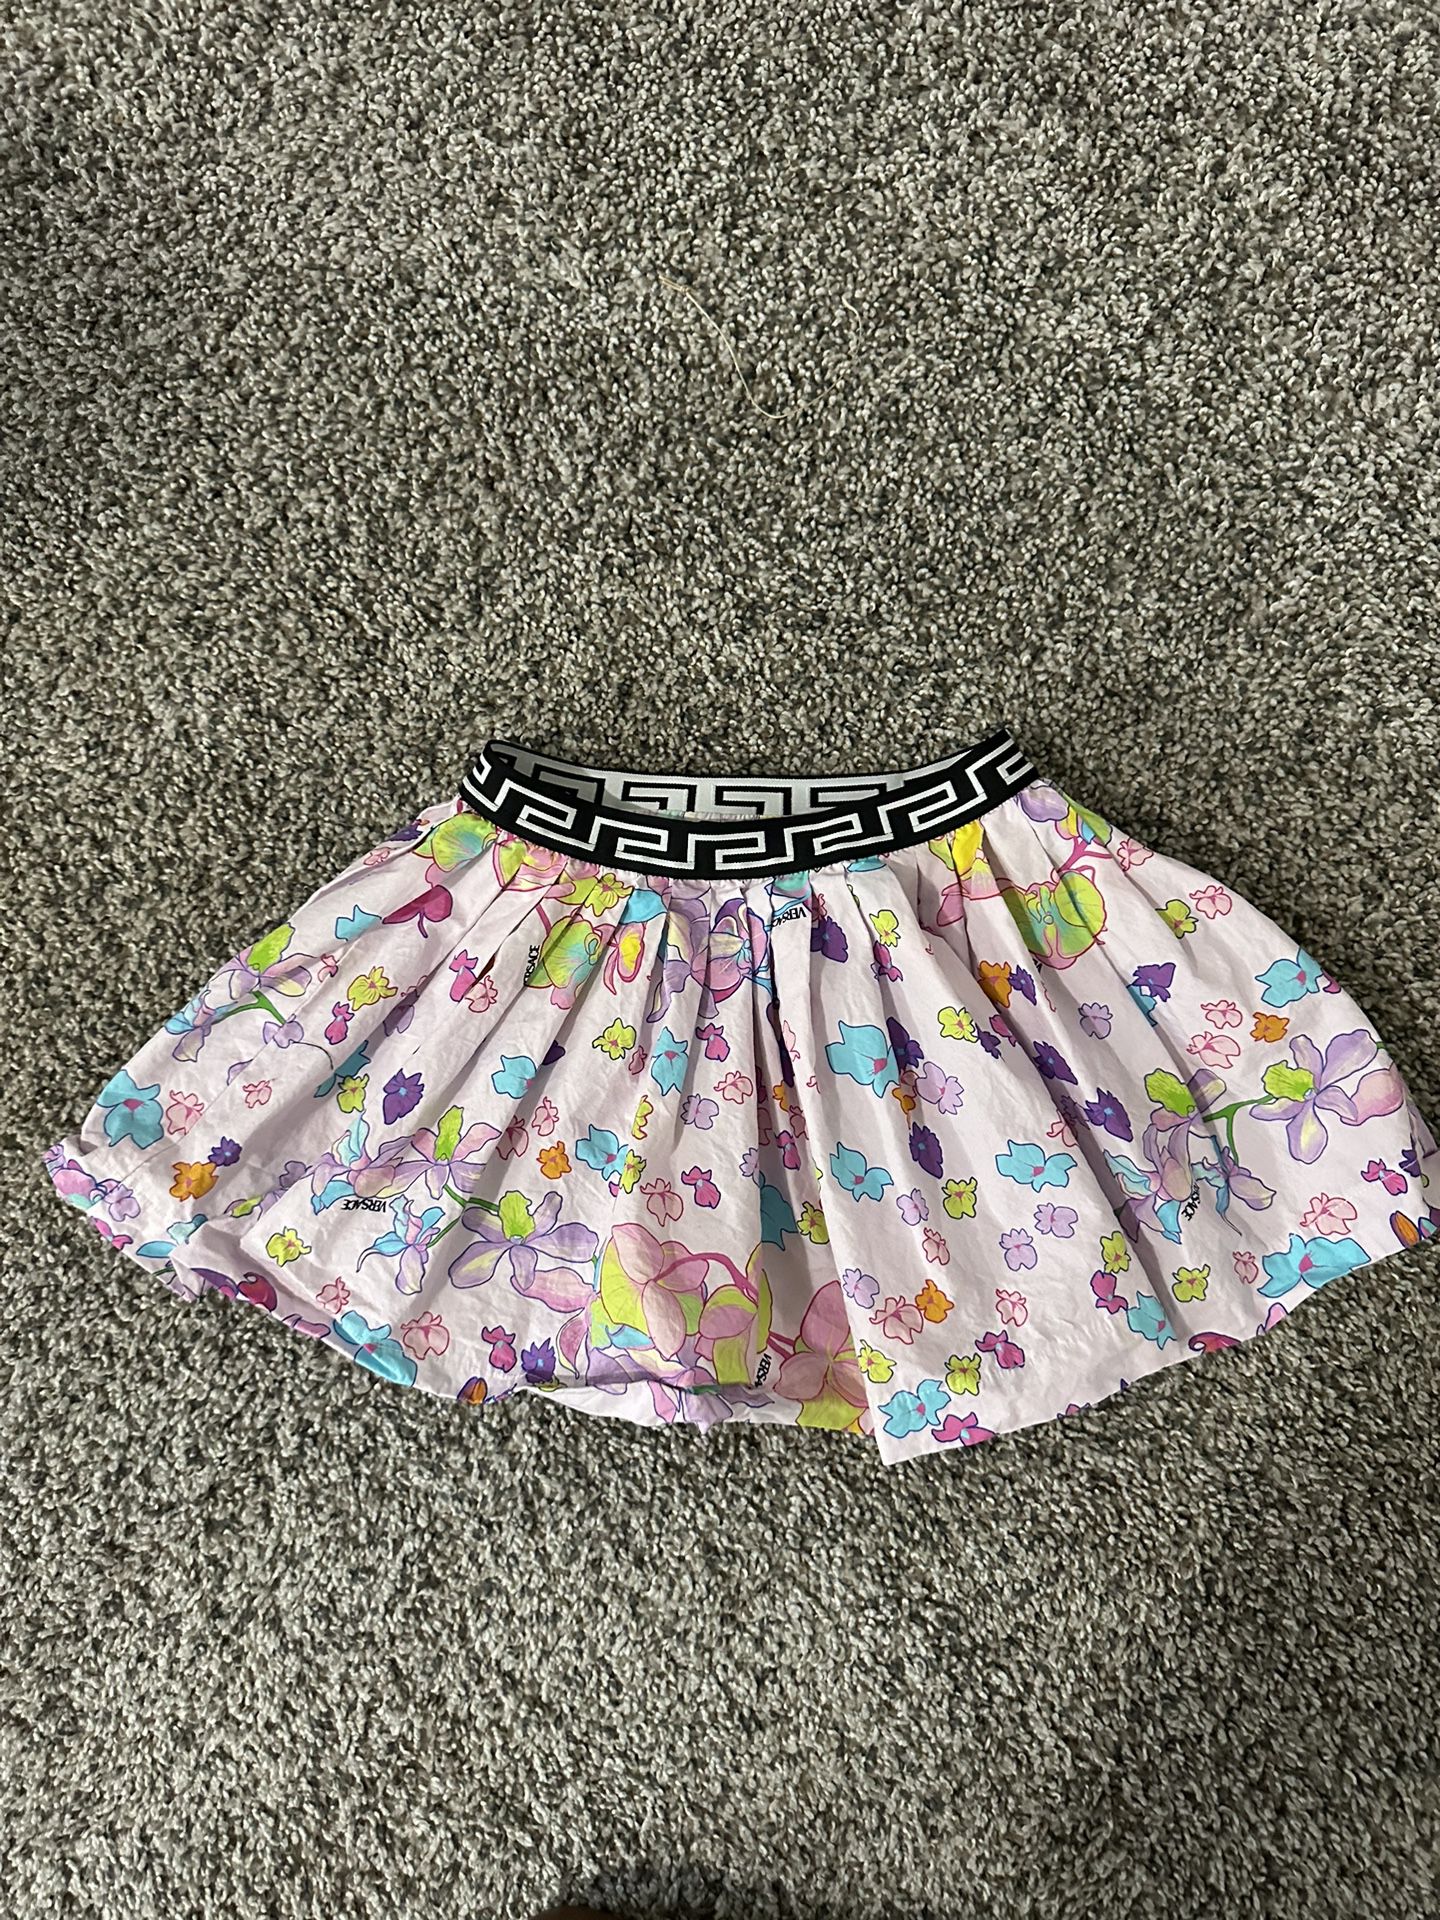 Toddler Girl Versace Skirt